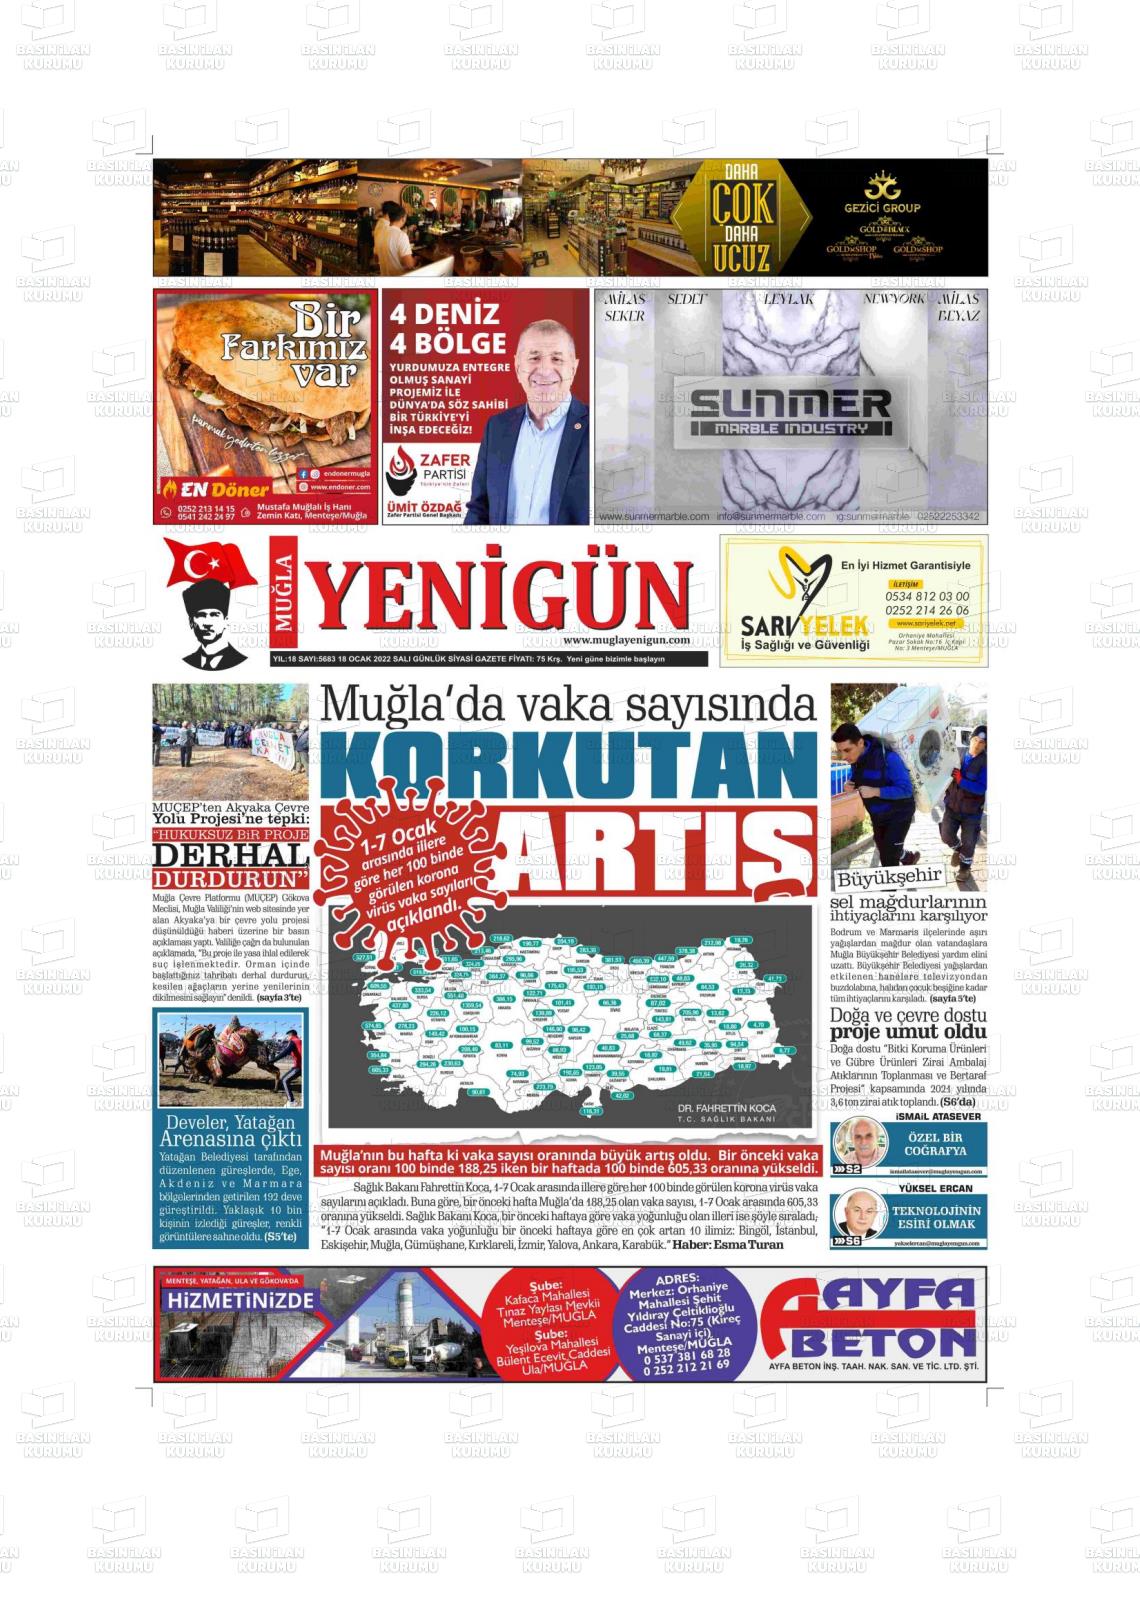 18 Ocak 2022 Muğla Yenigün Gazete Manşeti